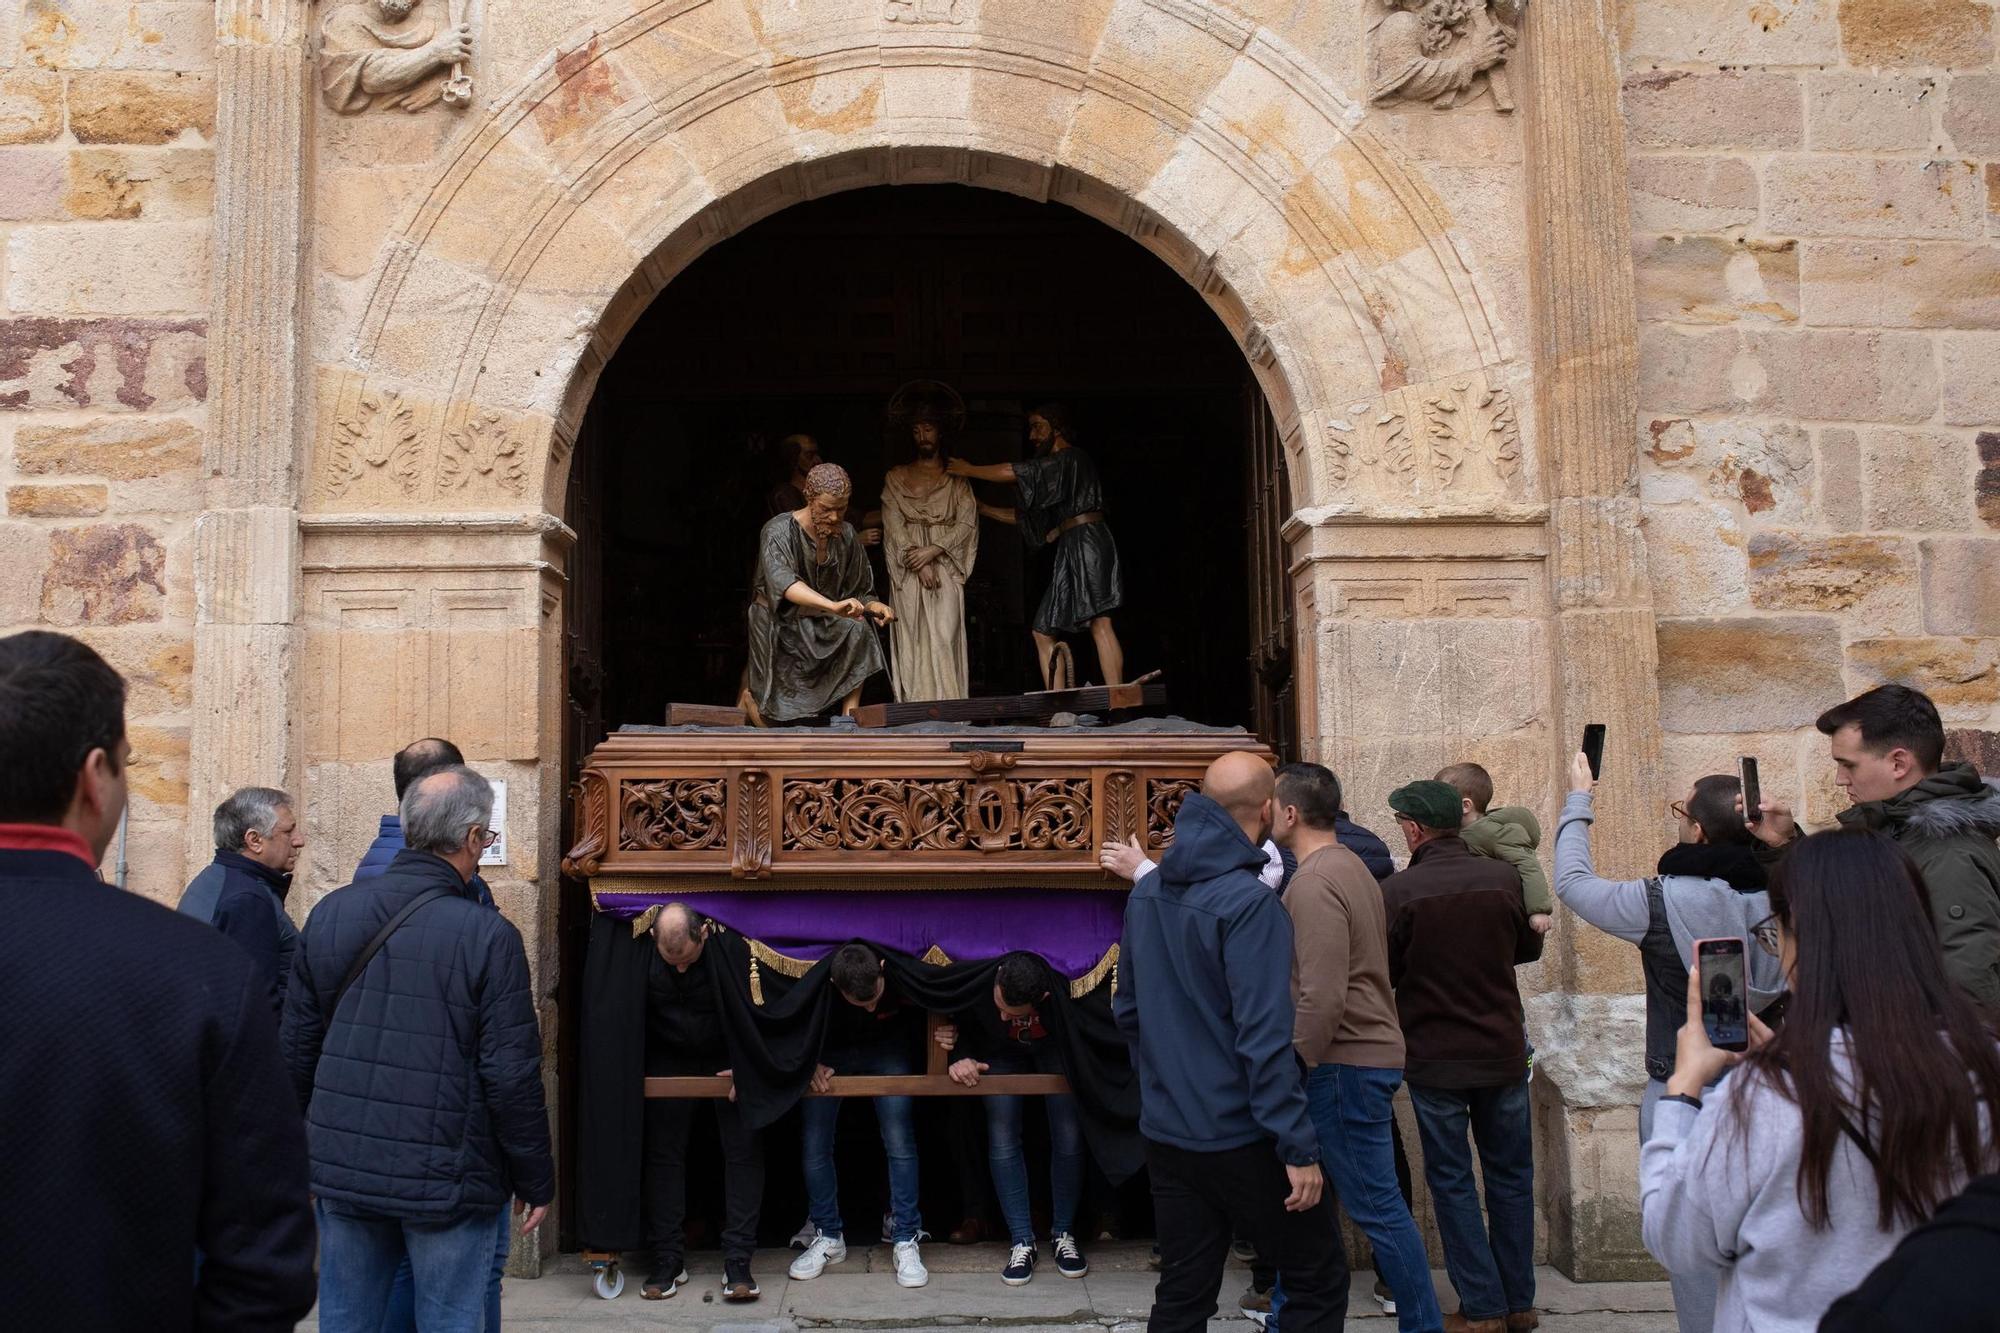 GALERÍA | Así ha sido el traslado de los grupos escultóricos de Zamora a la carpa